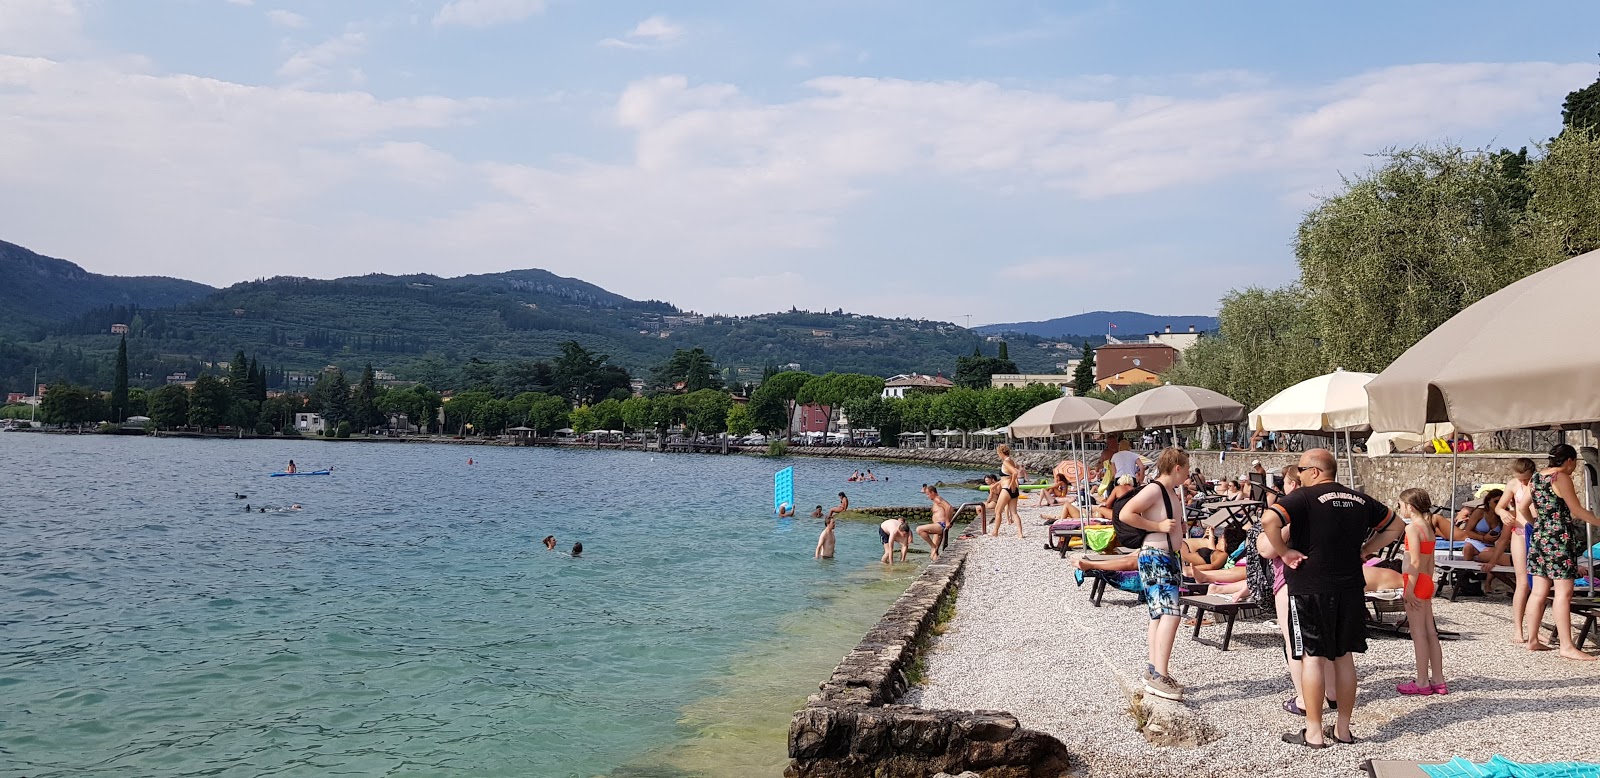 Zdjęcie Spiaggia La Cavalla Garda - popularne miejsce wśród znawców relaksu